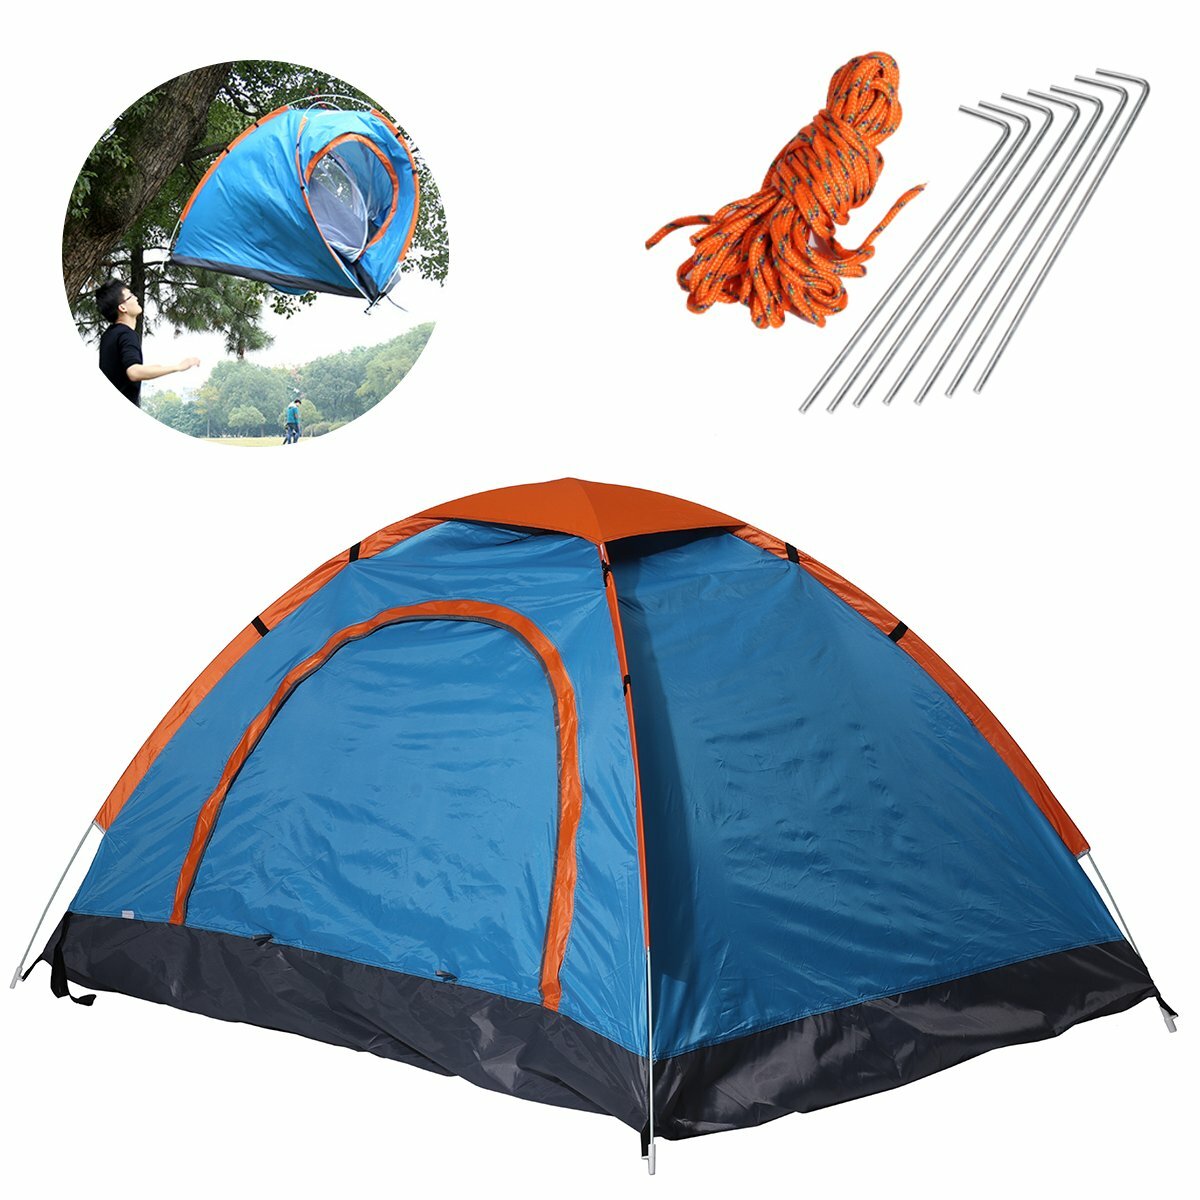 Faltbares wasserdichtes ultraleichtes Campingzelt für 2 Personen mit Sonnenschutzdach, ideal für Outdoor-Reisen und Wandern